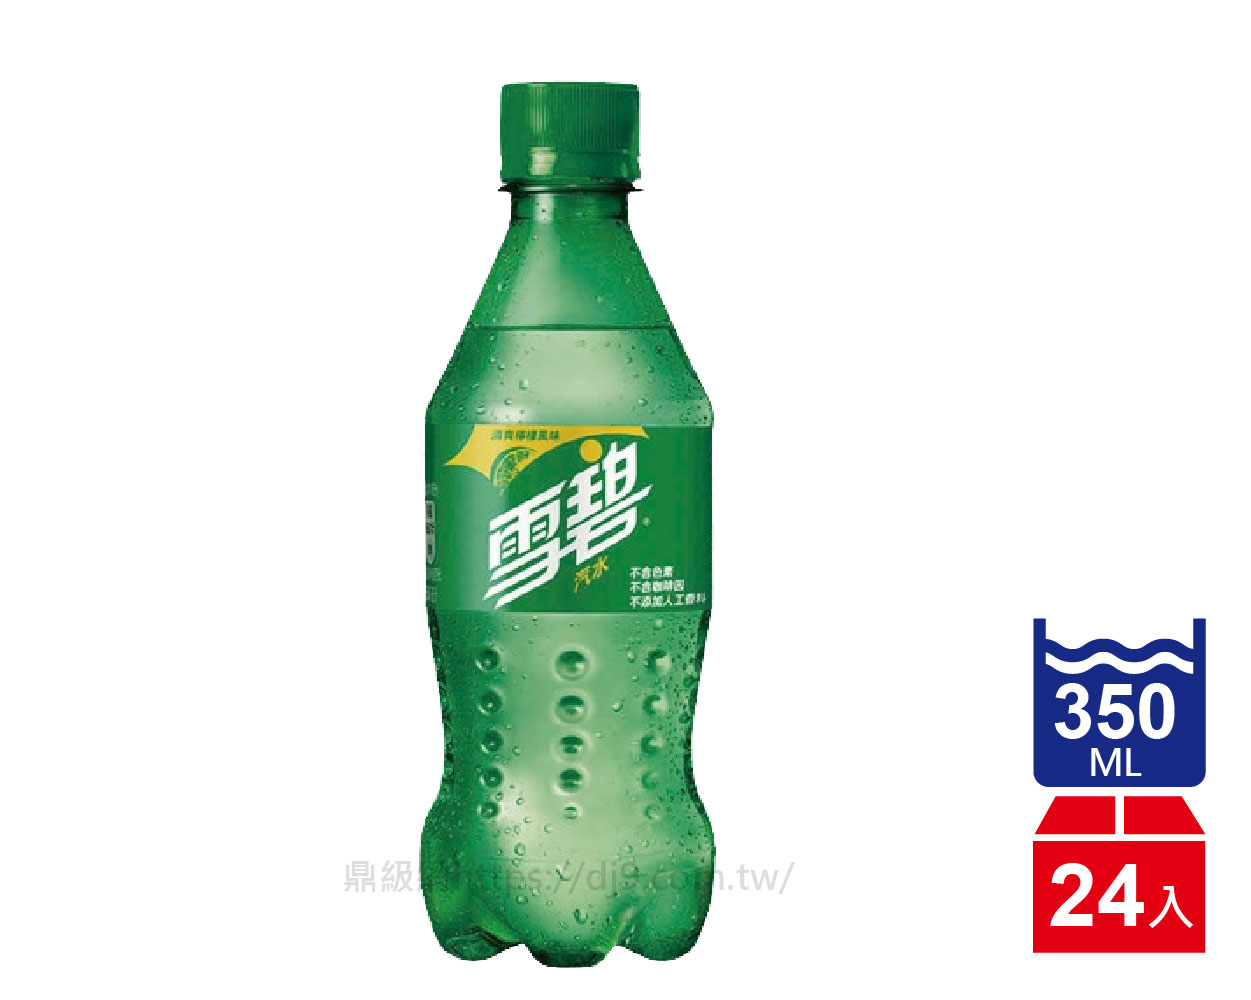 雪碧汽水(350mlx24瓶)